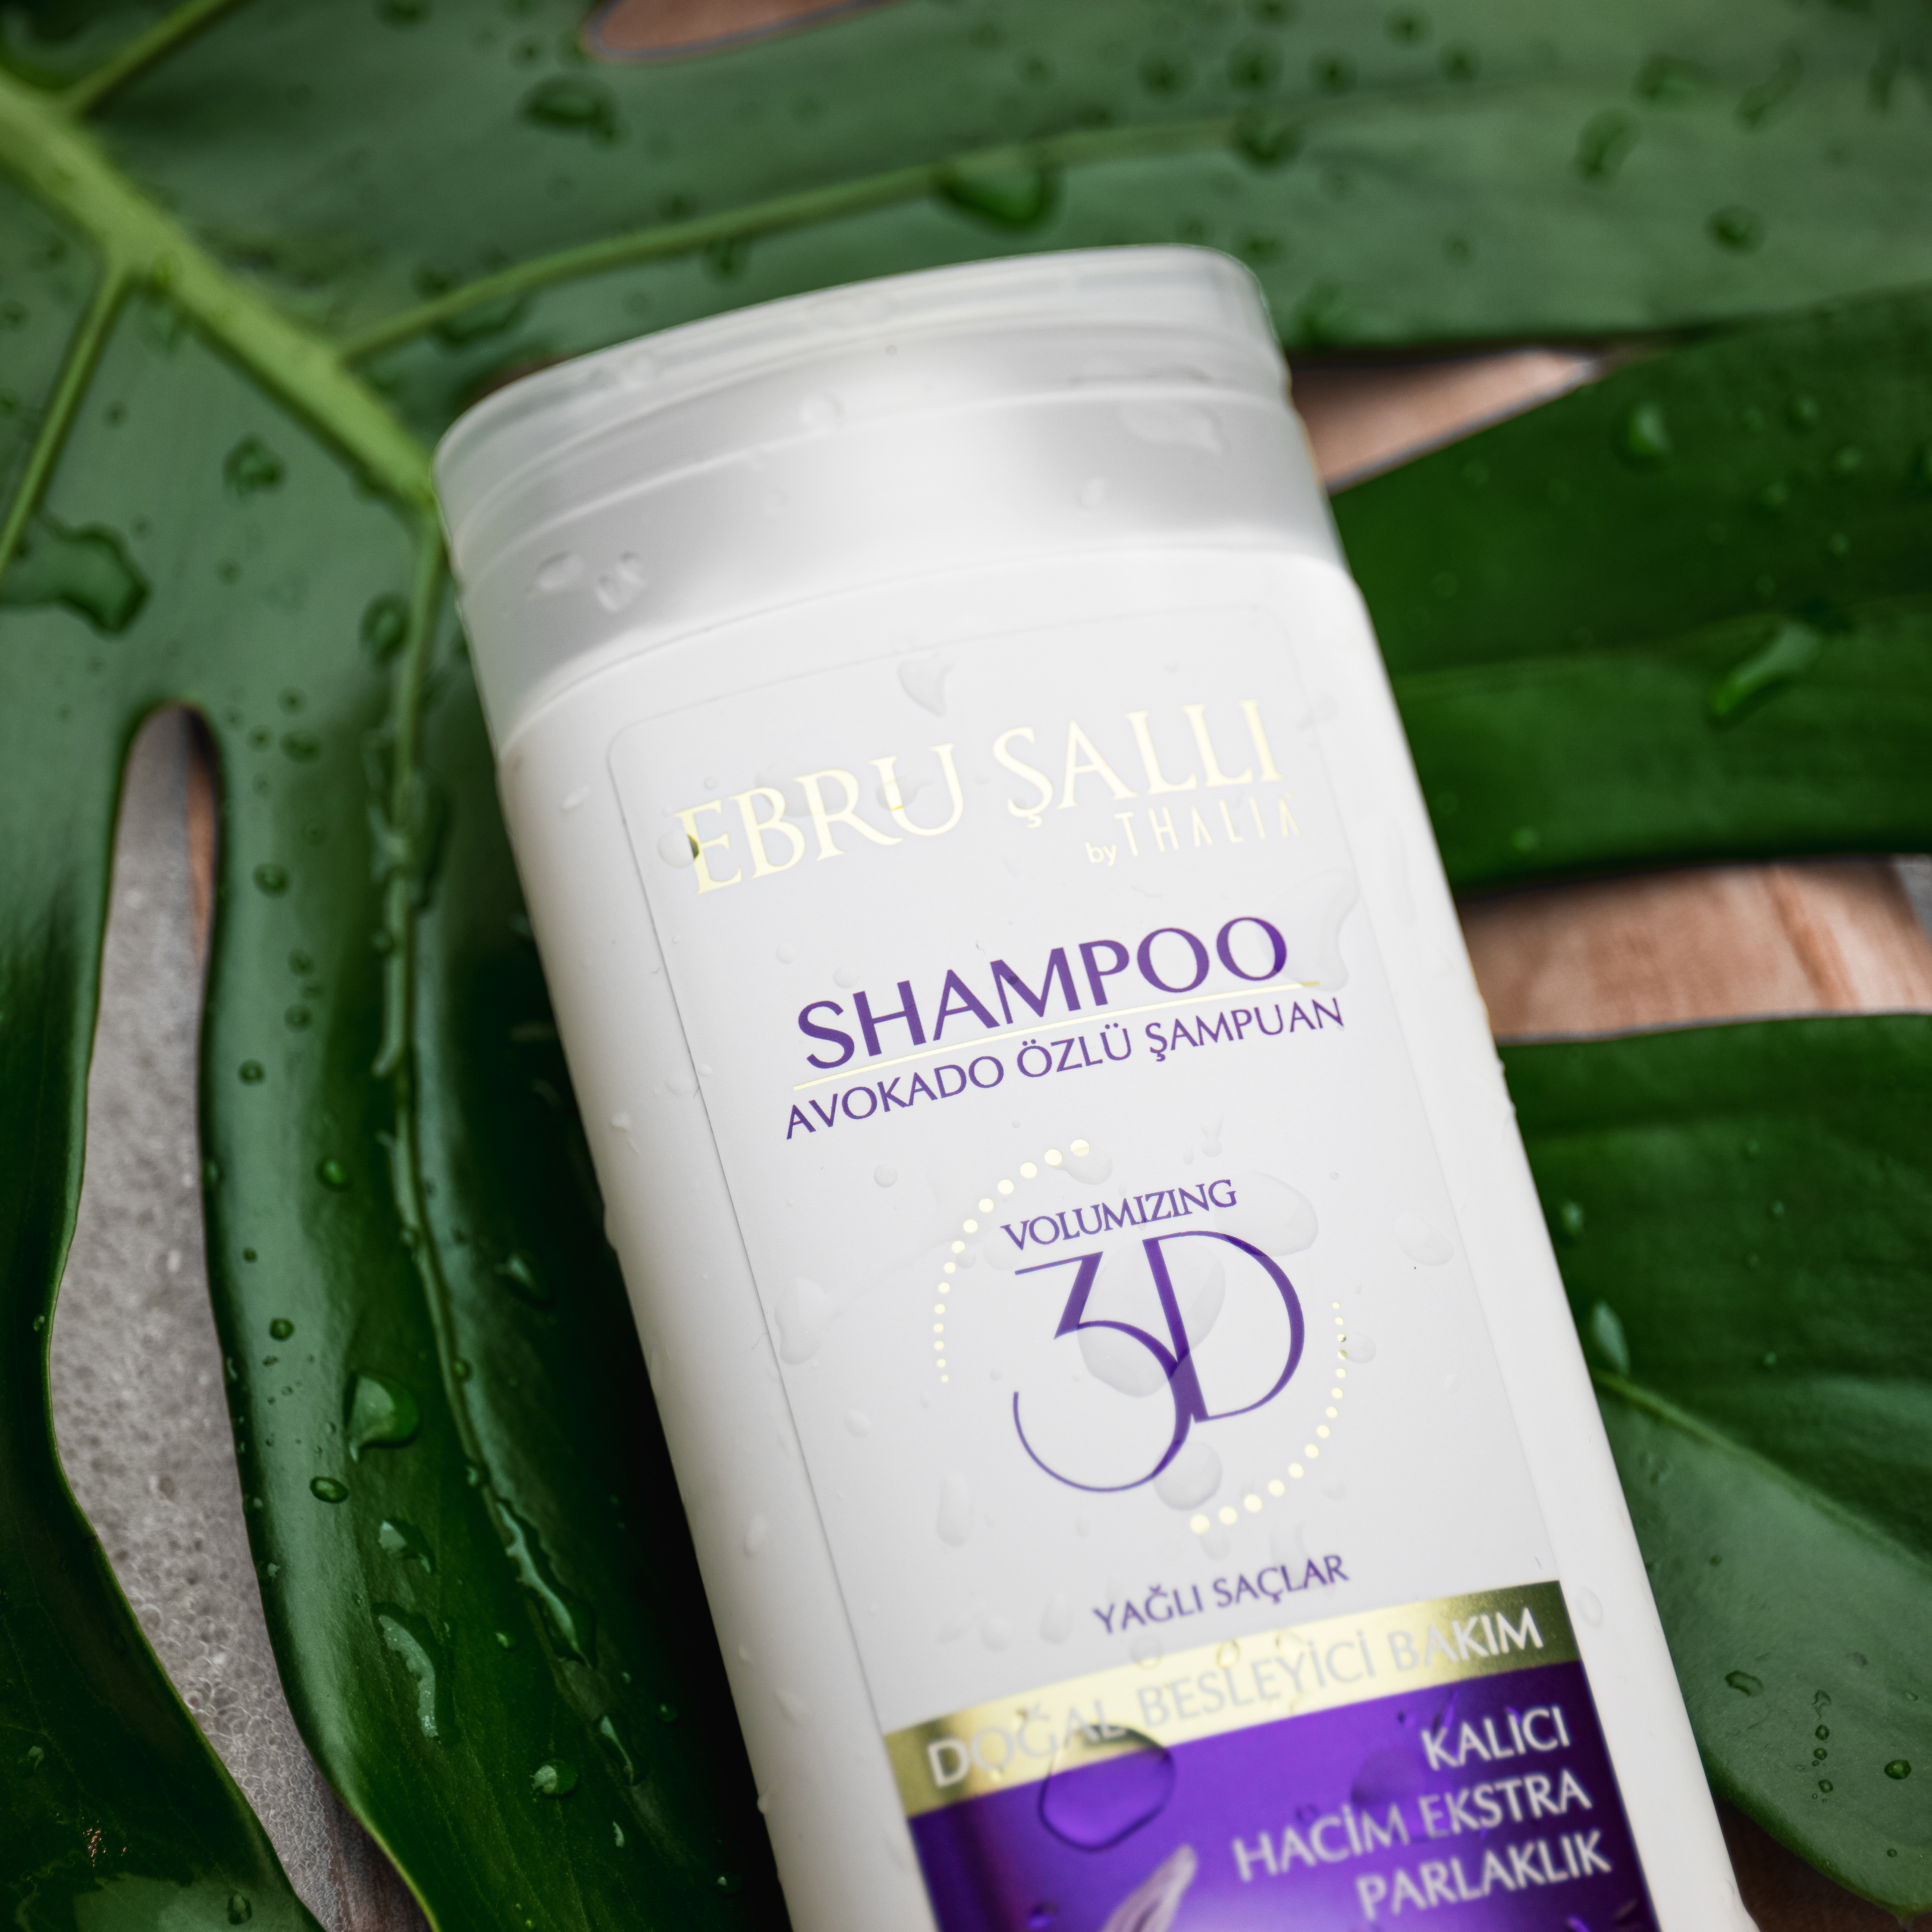 EBRU SALLI by THALIA - Avocado 3D Volumen Shampoo 300ml - für fettige Haare